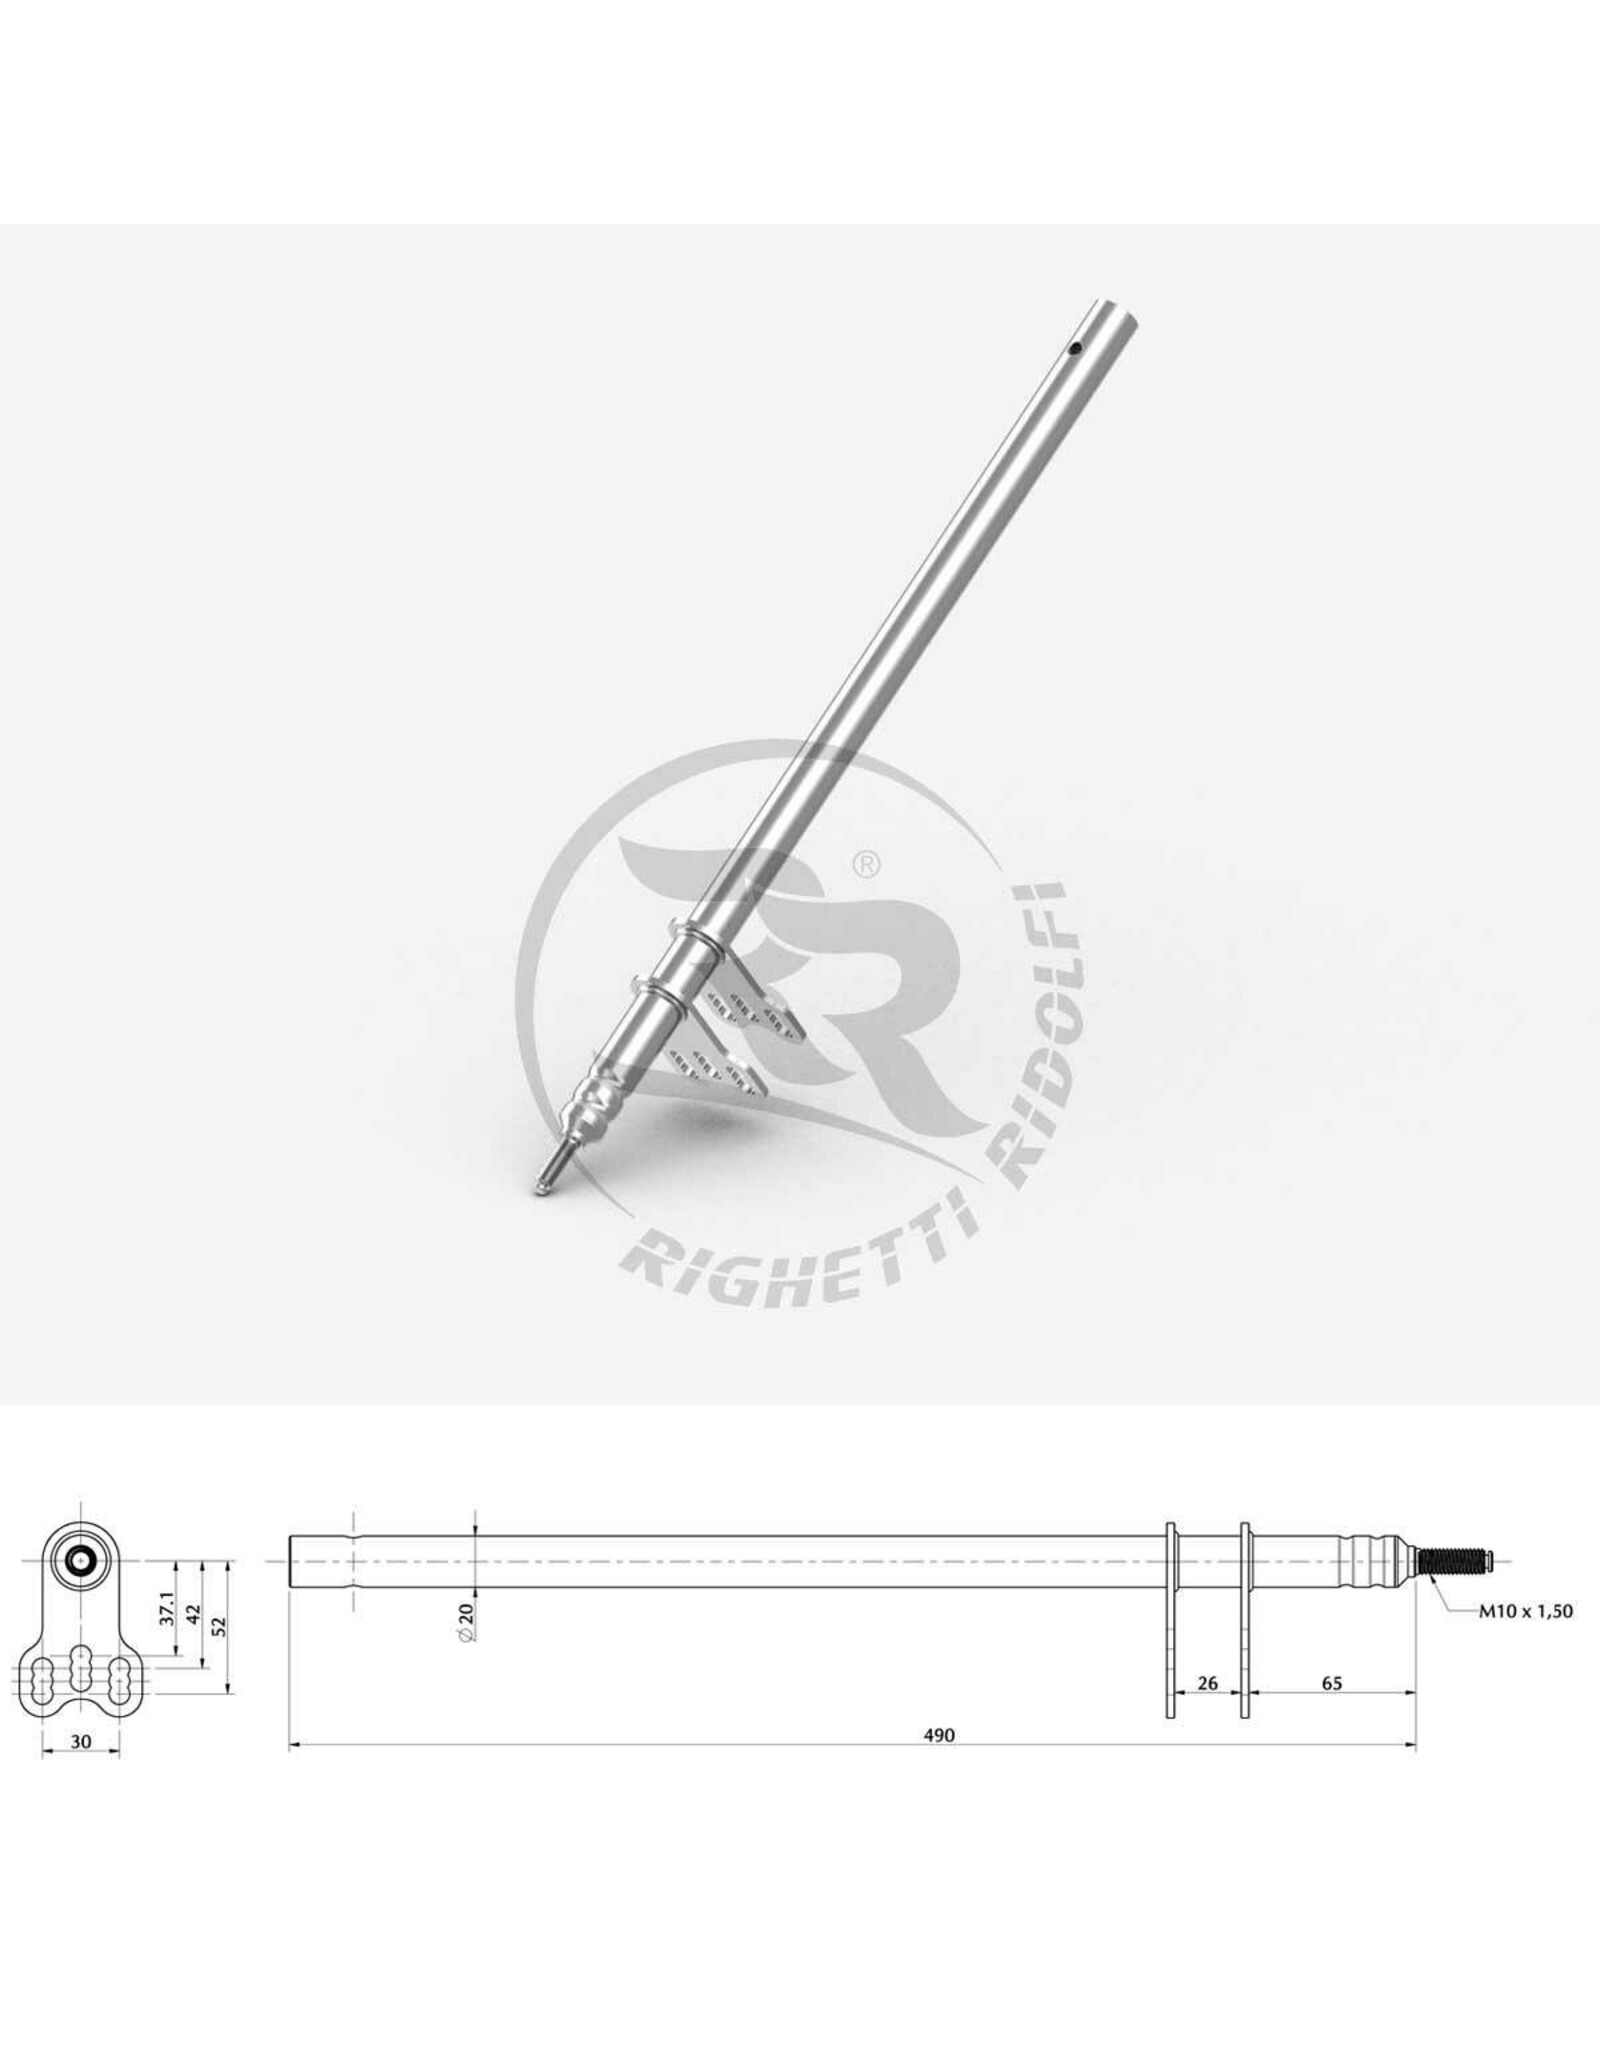 Righetti Ridolfi RR Steering Column M10 L=490MM